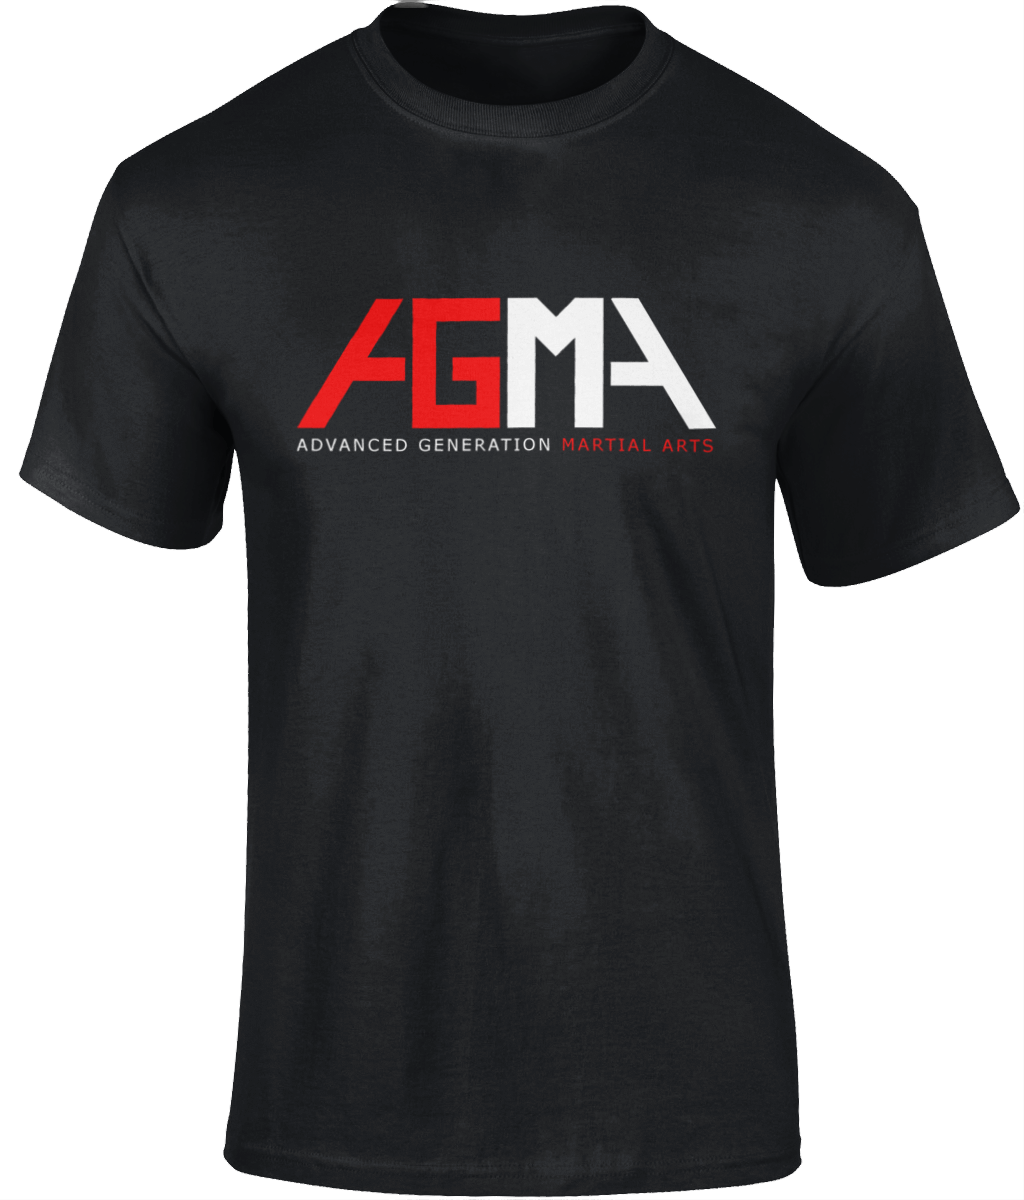 AGMA T-shirt - Black - Adults